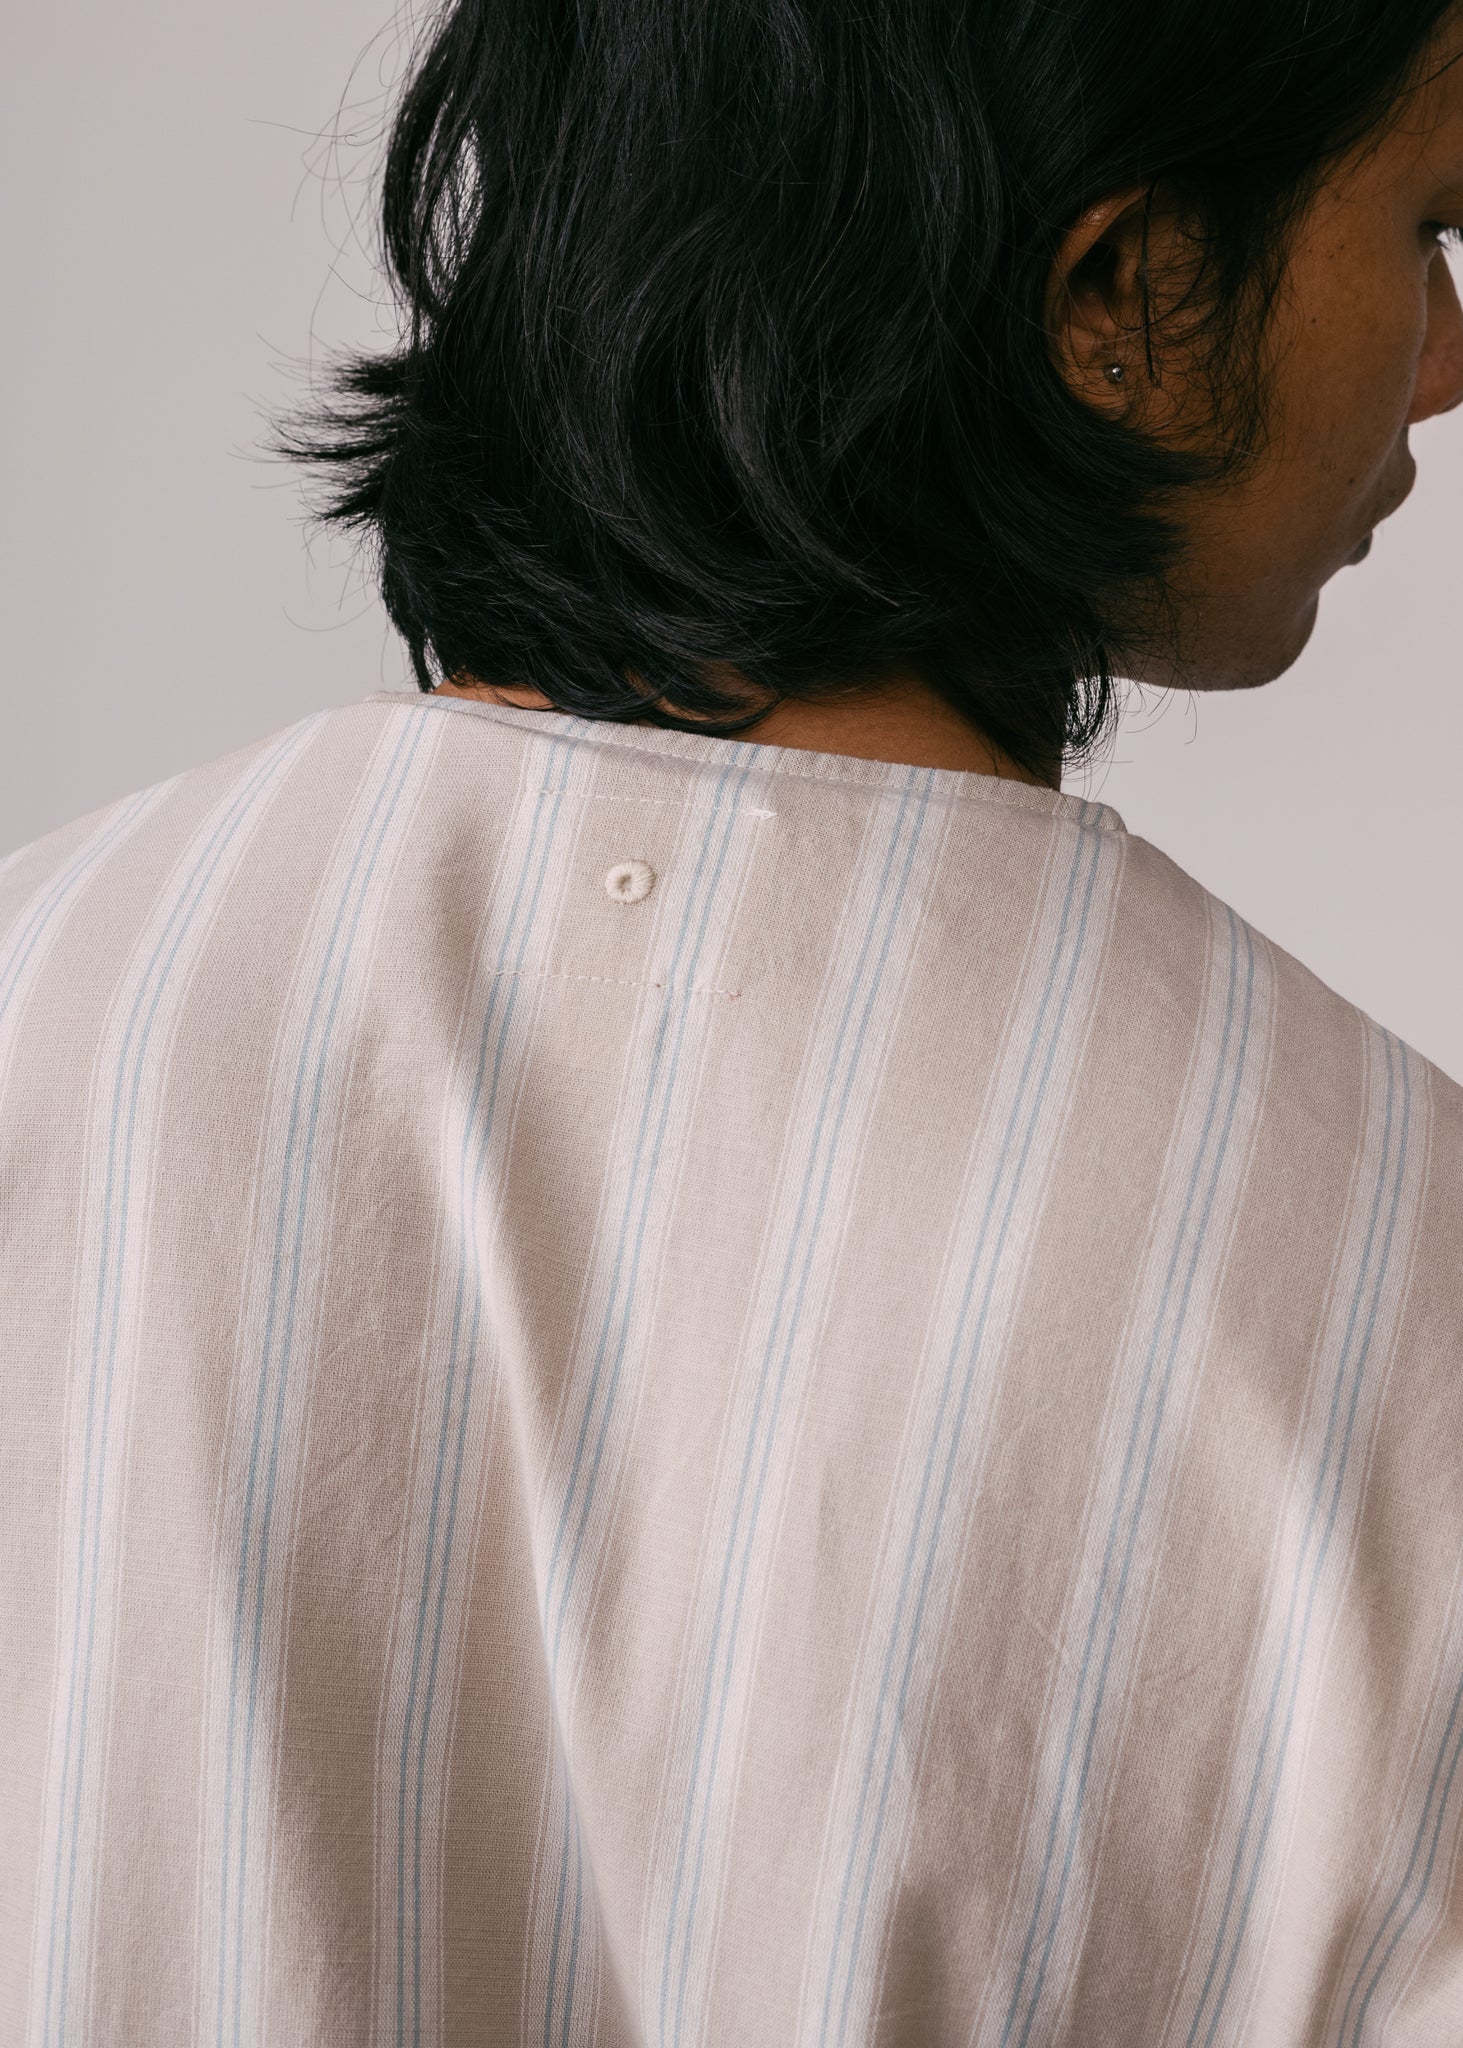 Unisex: Hening Buttoned Top (Beige Stripe)